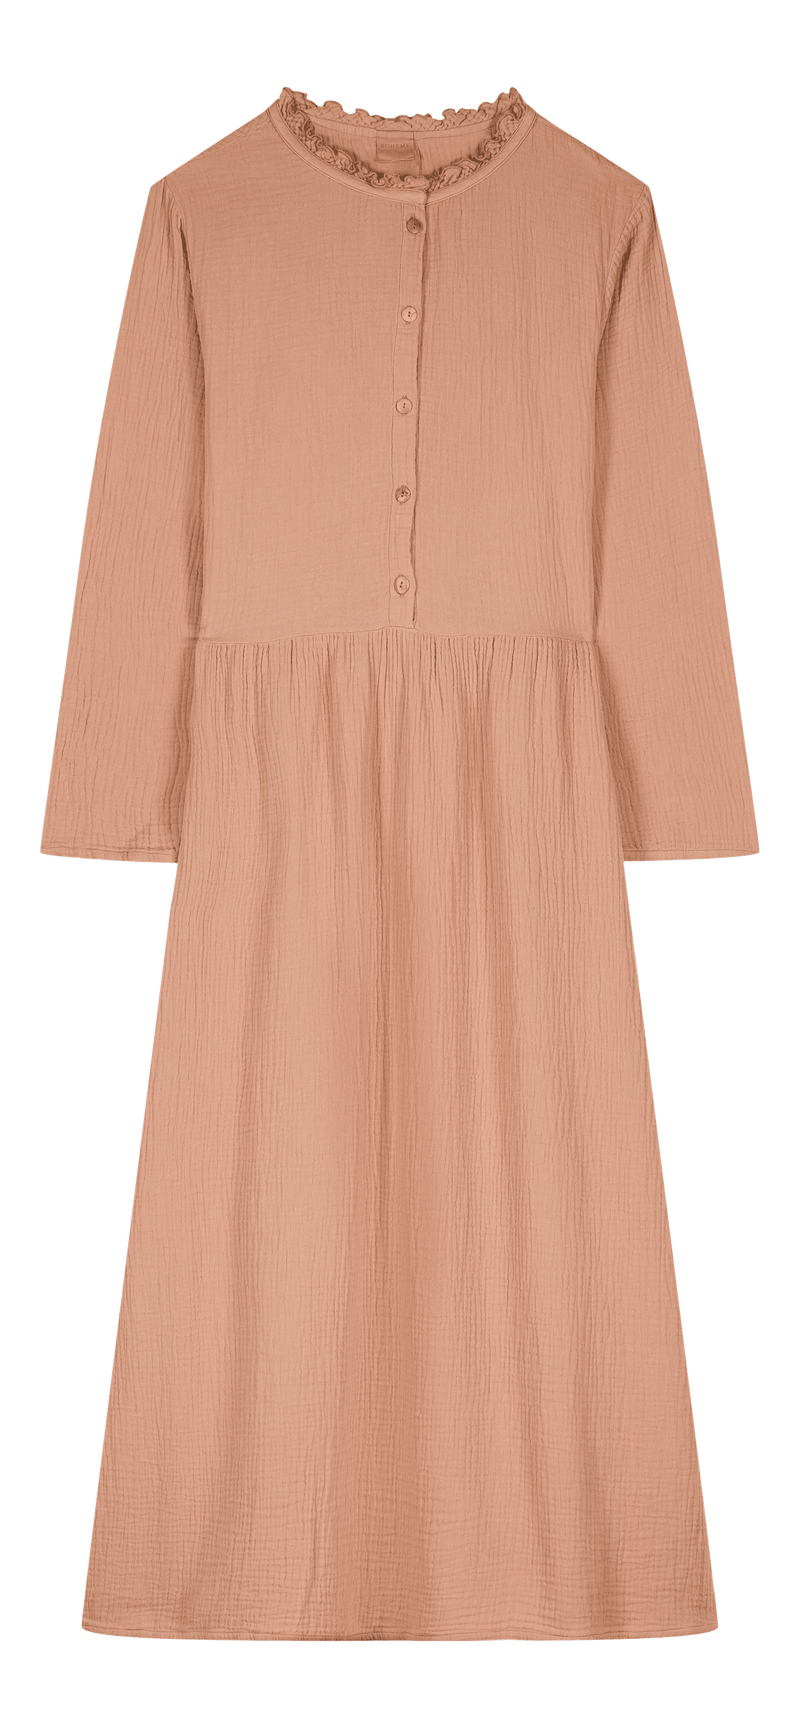 Robe Vermont Femme Praline